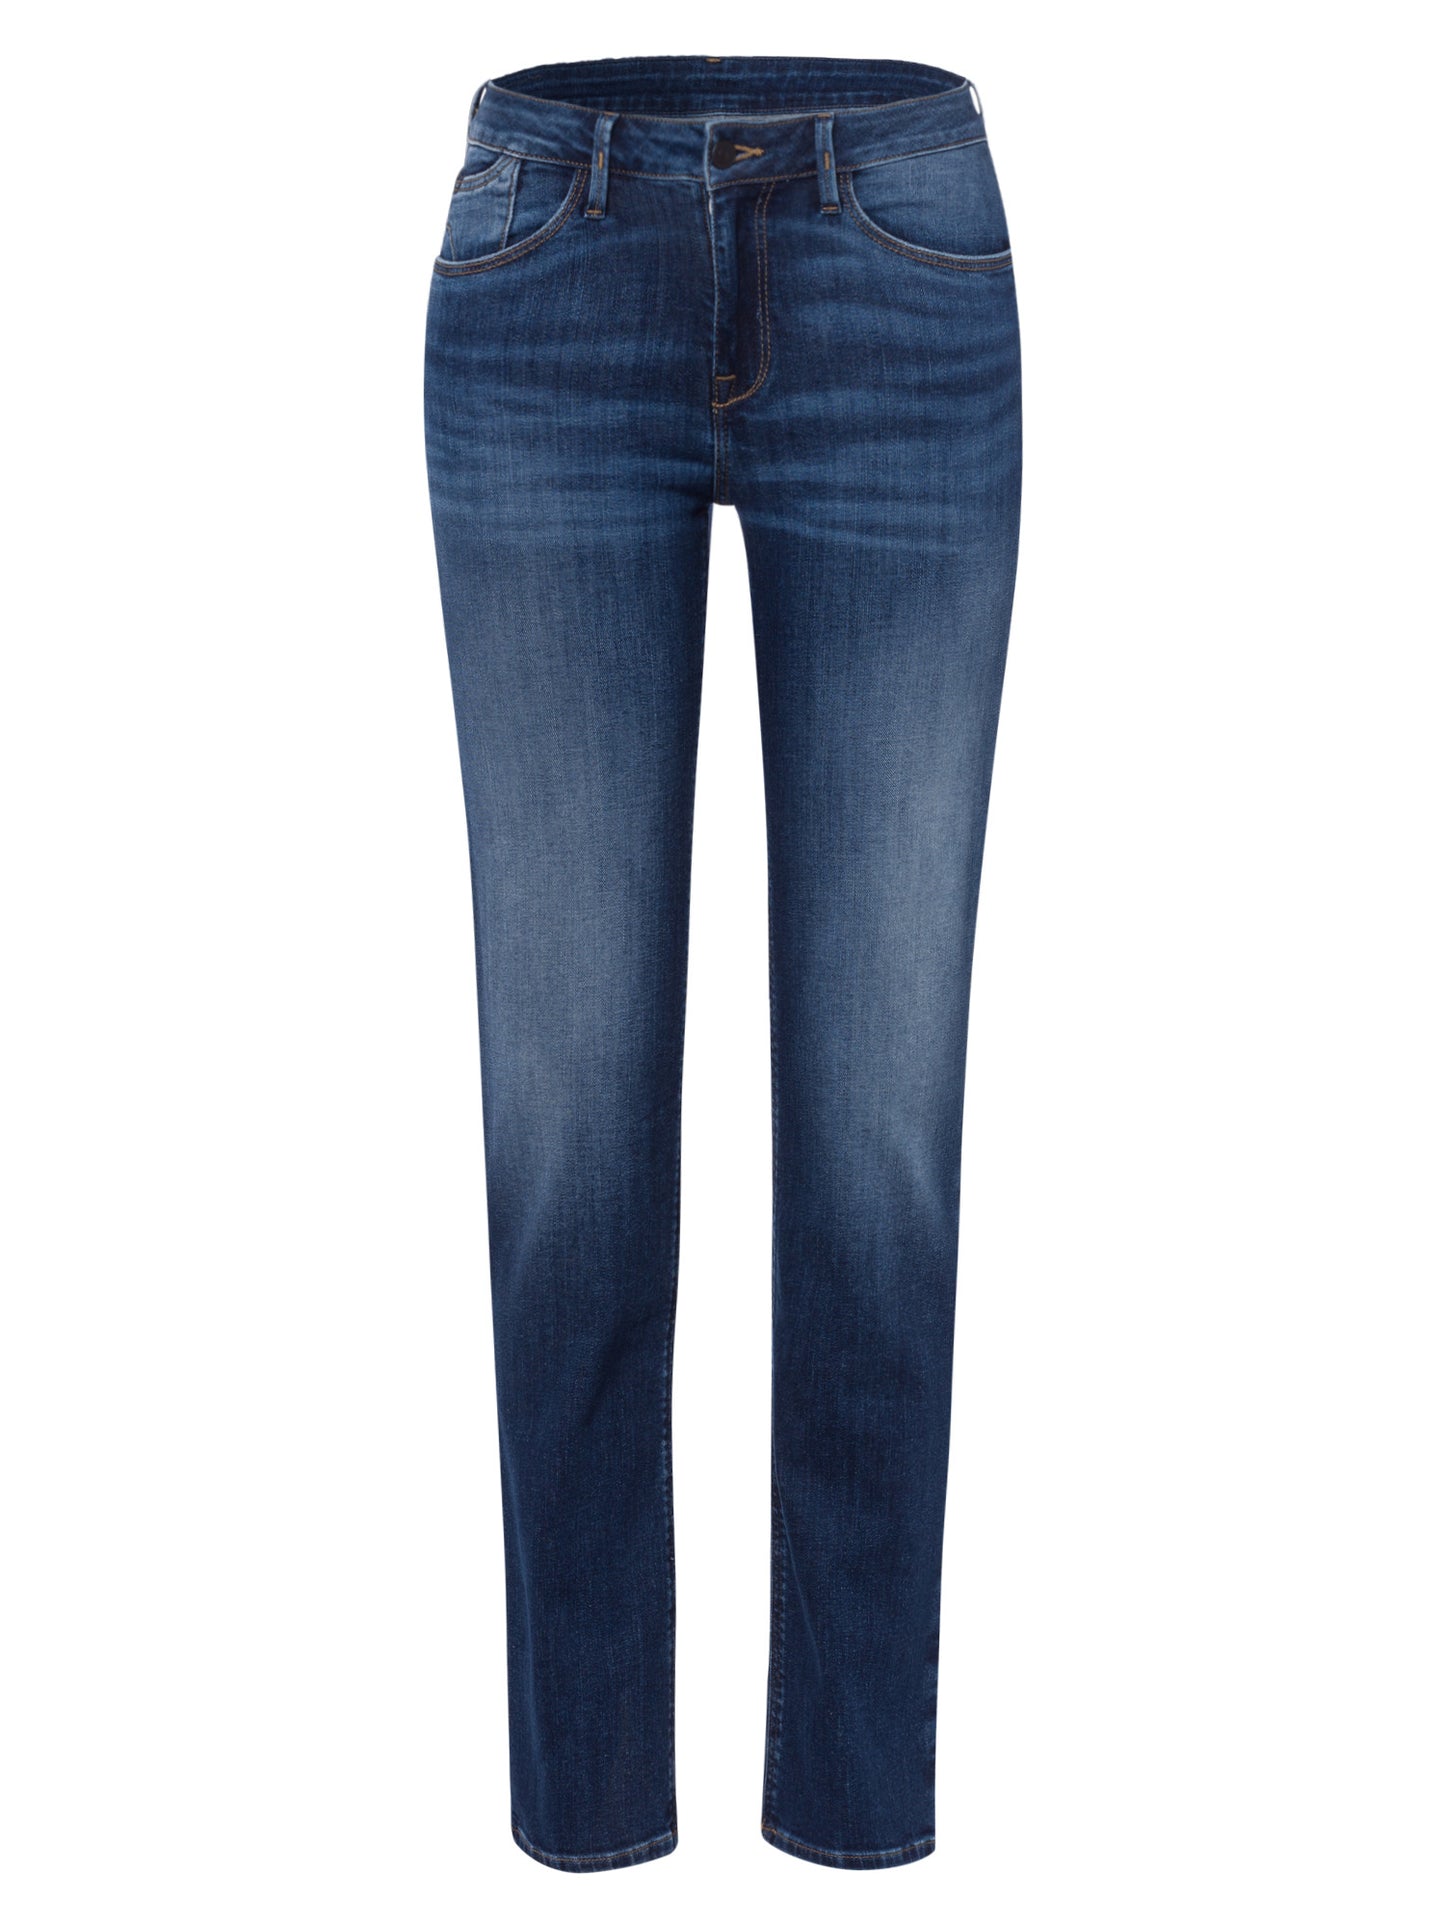 Rose Damen Jeans Regular Fit High Waist dunkelblau